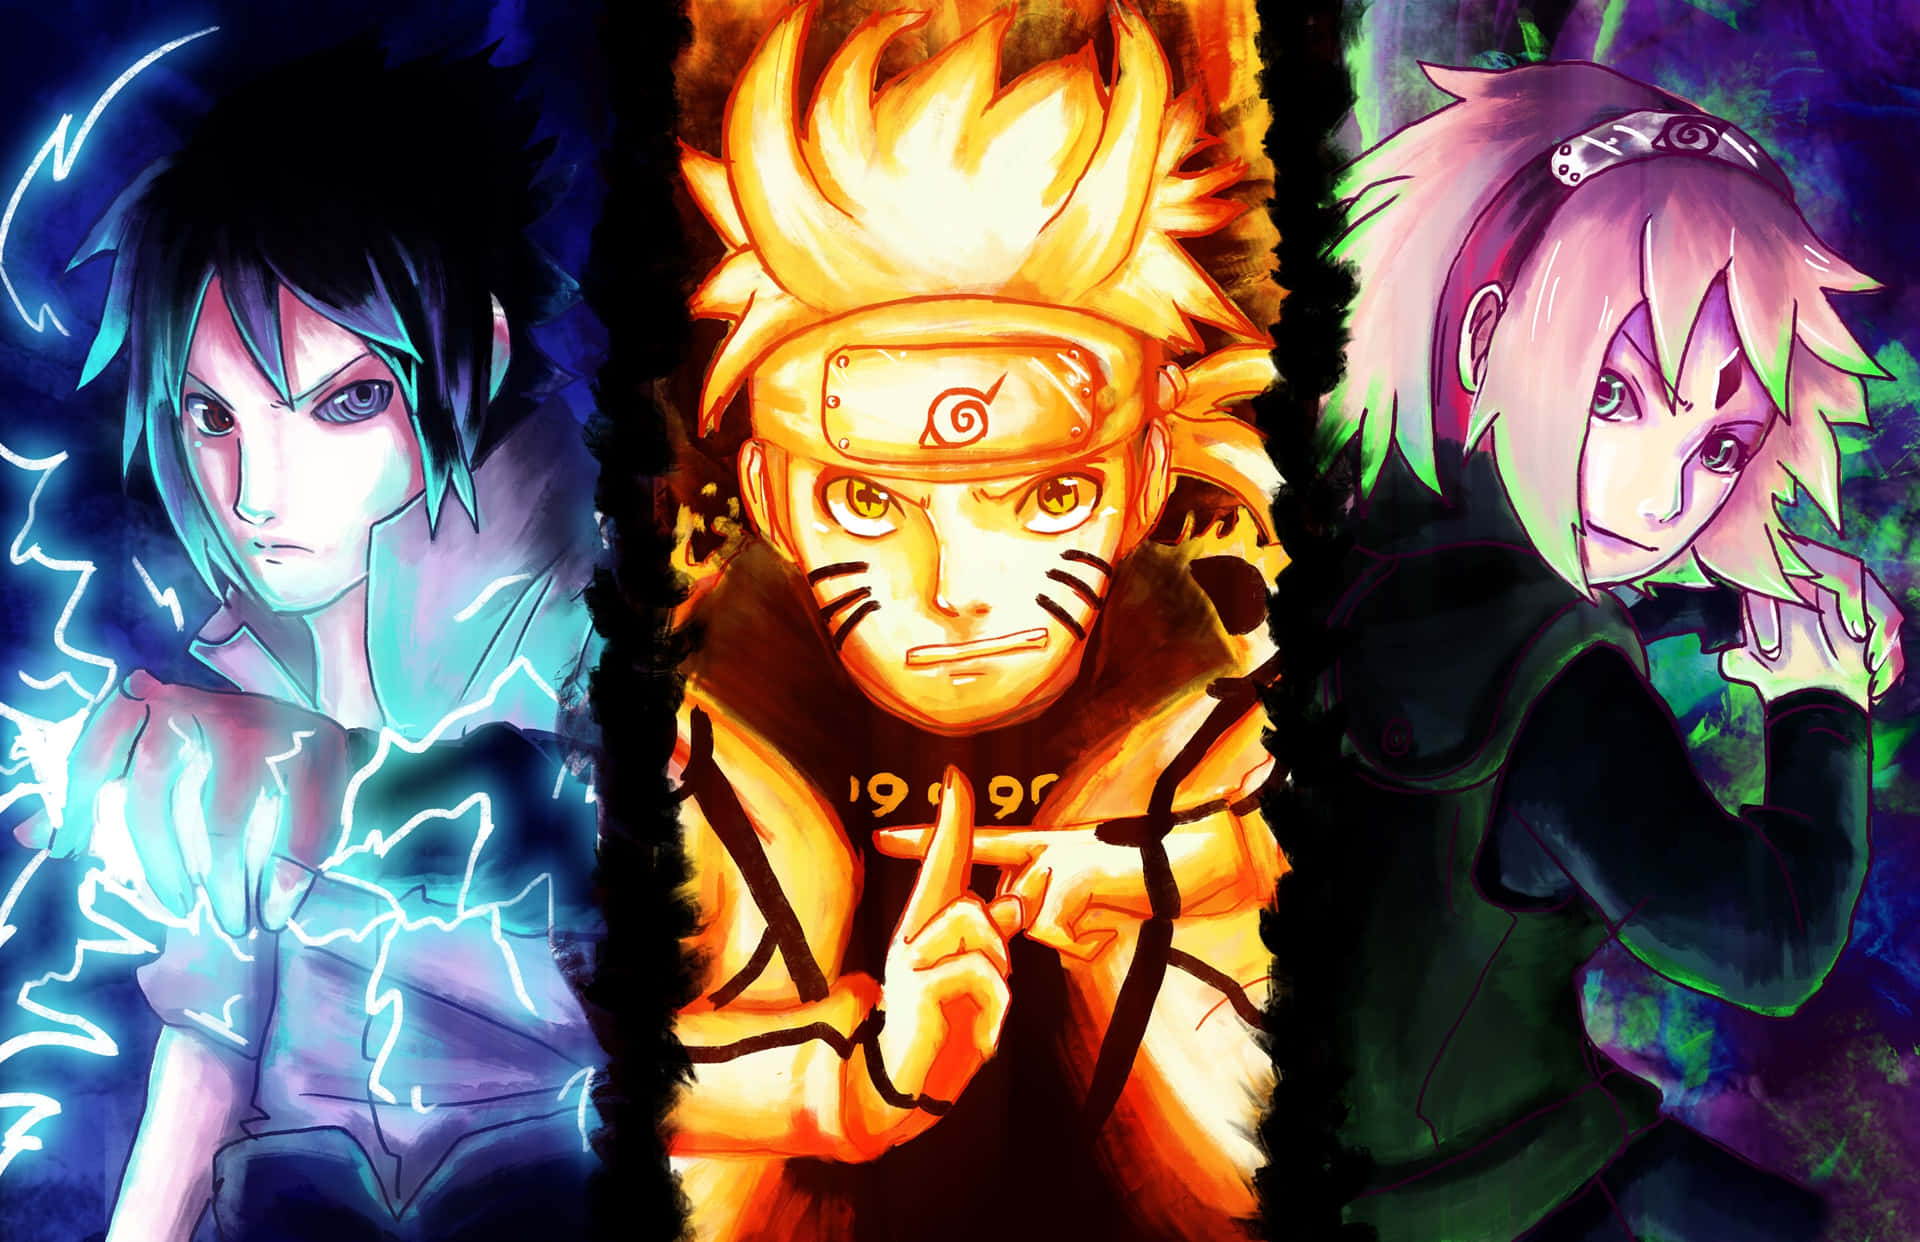 Naruto đội 7: Hãy xem những hình ảnh tuyệt đẹp về đội 7 trong Naruto, nơi có những thành viên trẻ tuổi nhưng lại sở hữu sức mạnh vô cùng đáng nể.